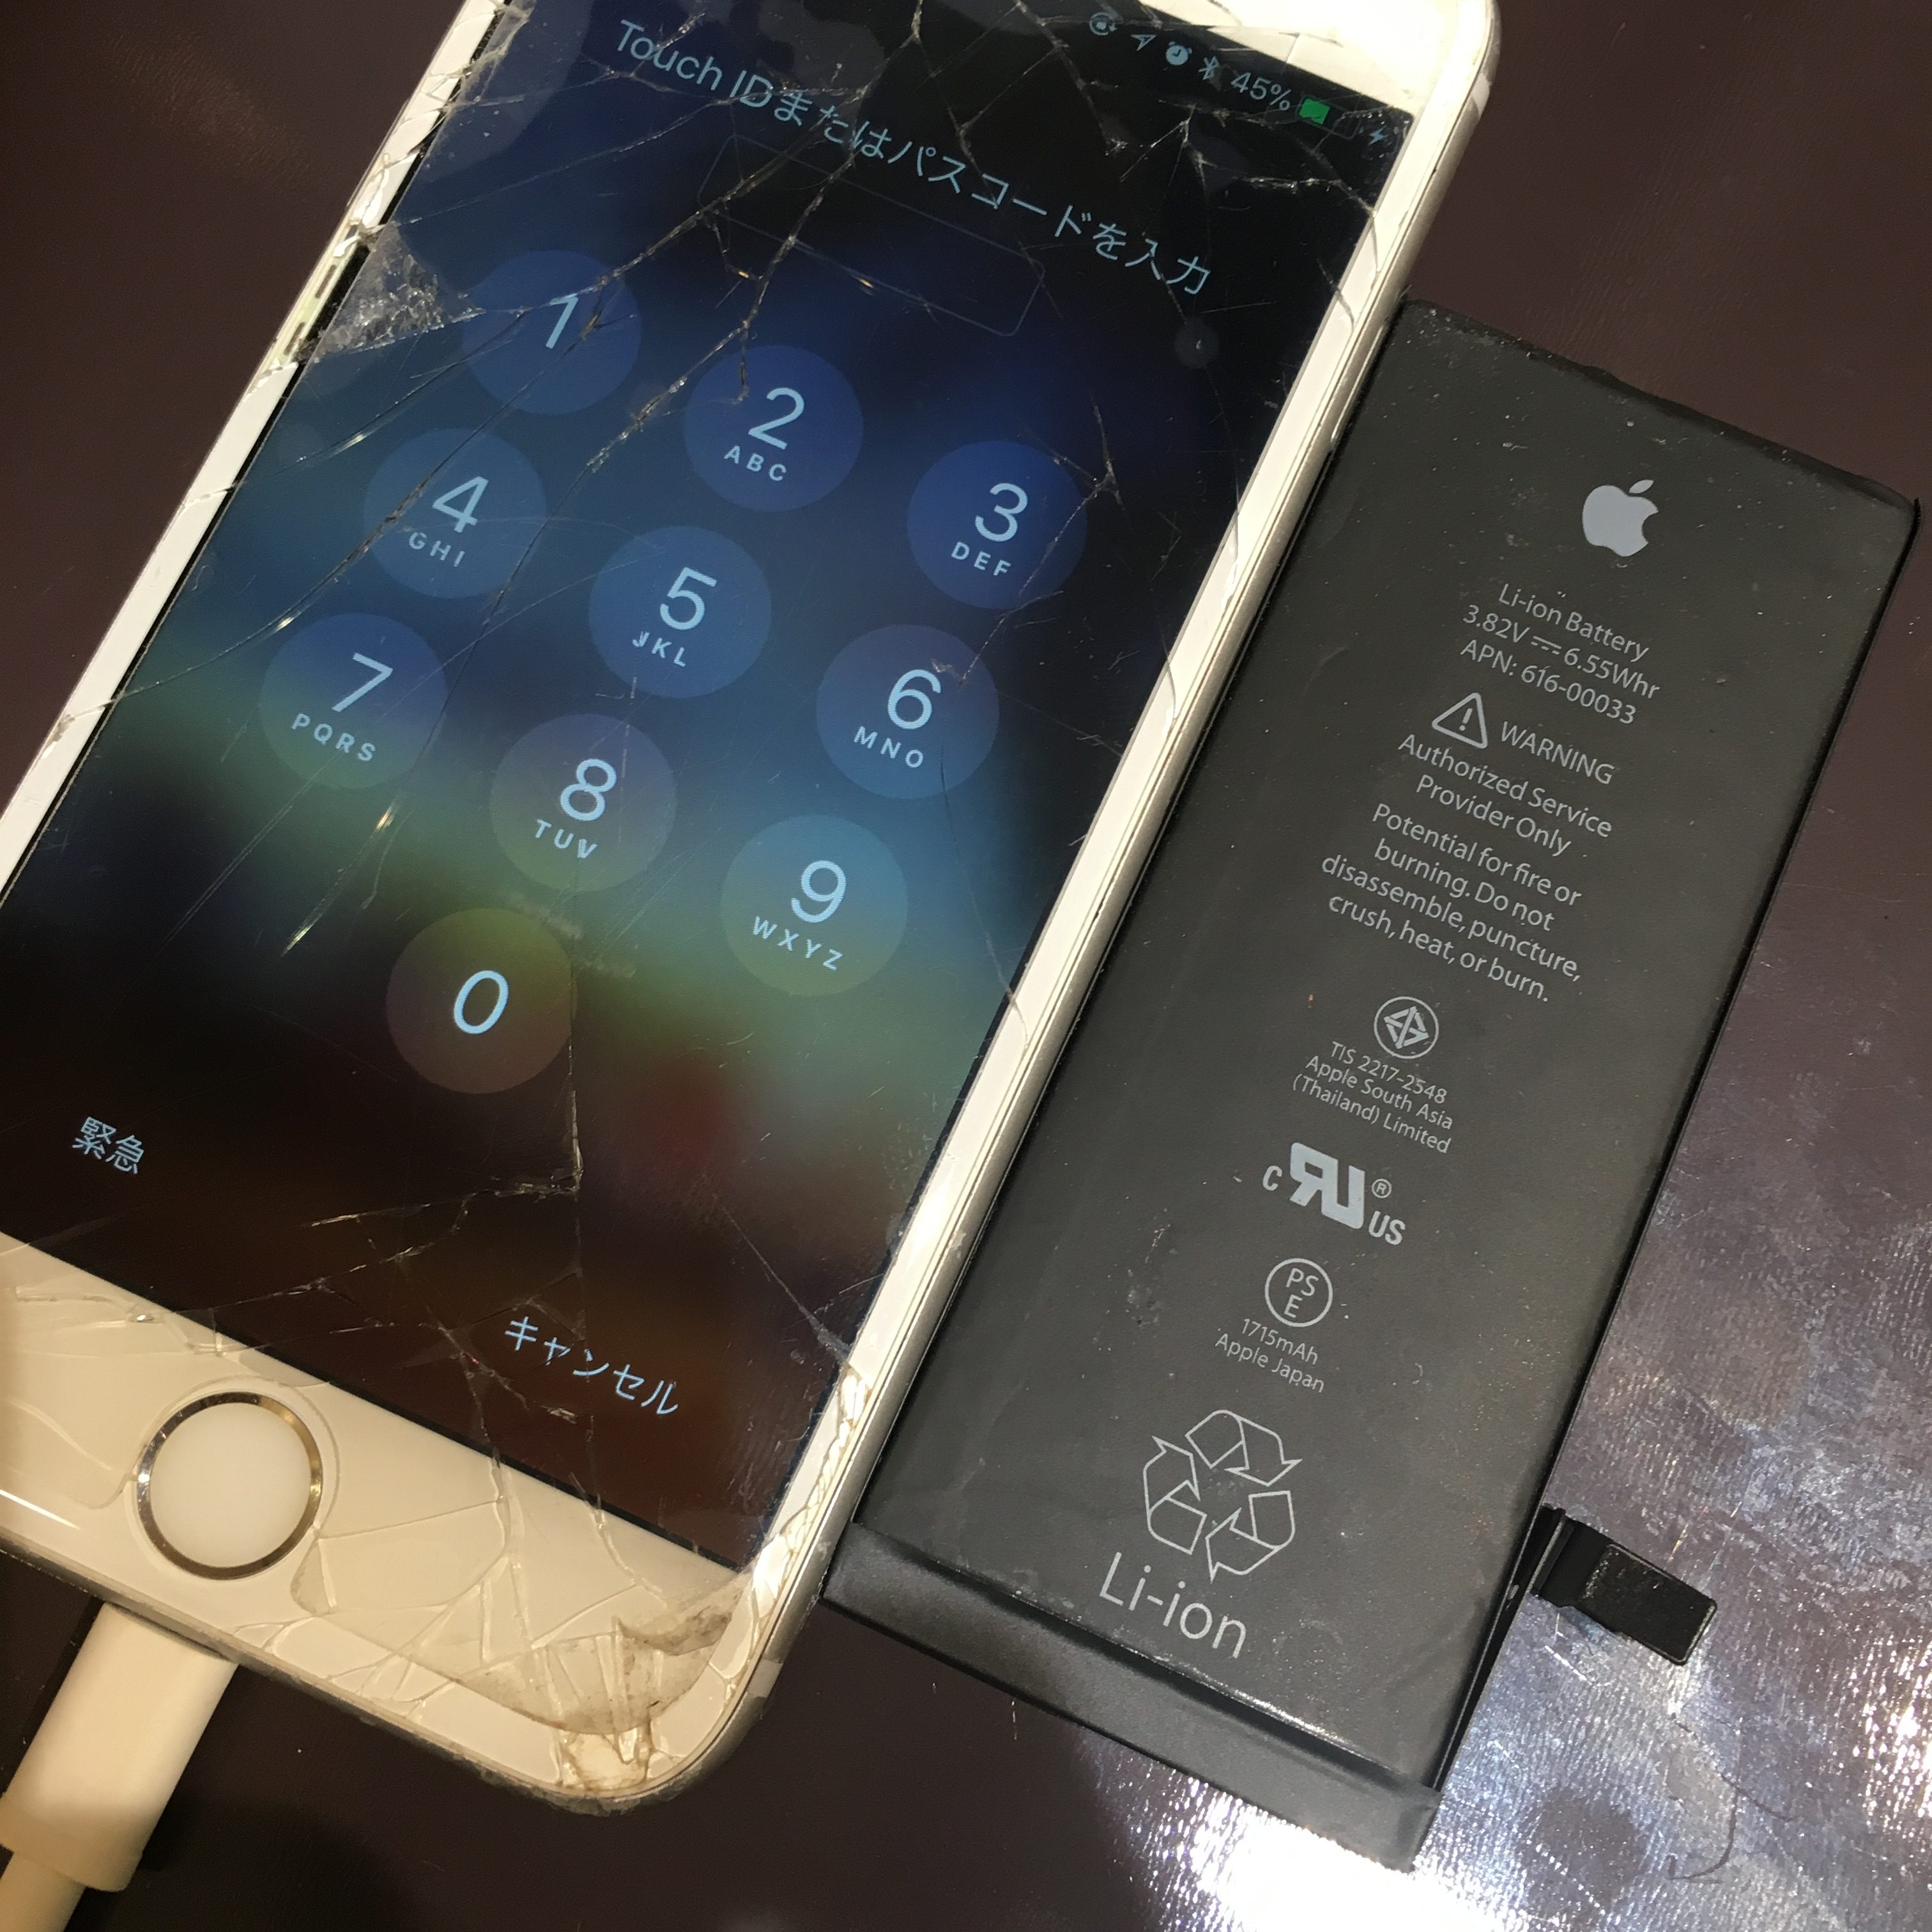 尼崎市のiPhone・iPad修理専門店 スマートクールつかしん店 【iPhone6S】バッテリー交換修理 《伊丹市からのご来店》